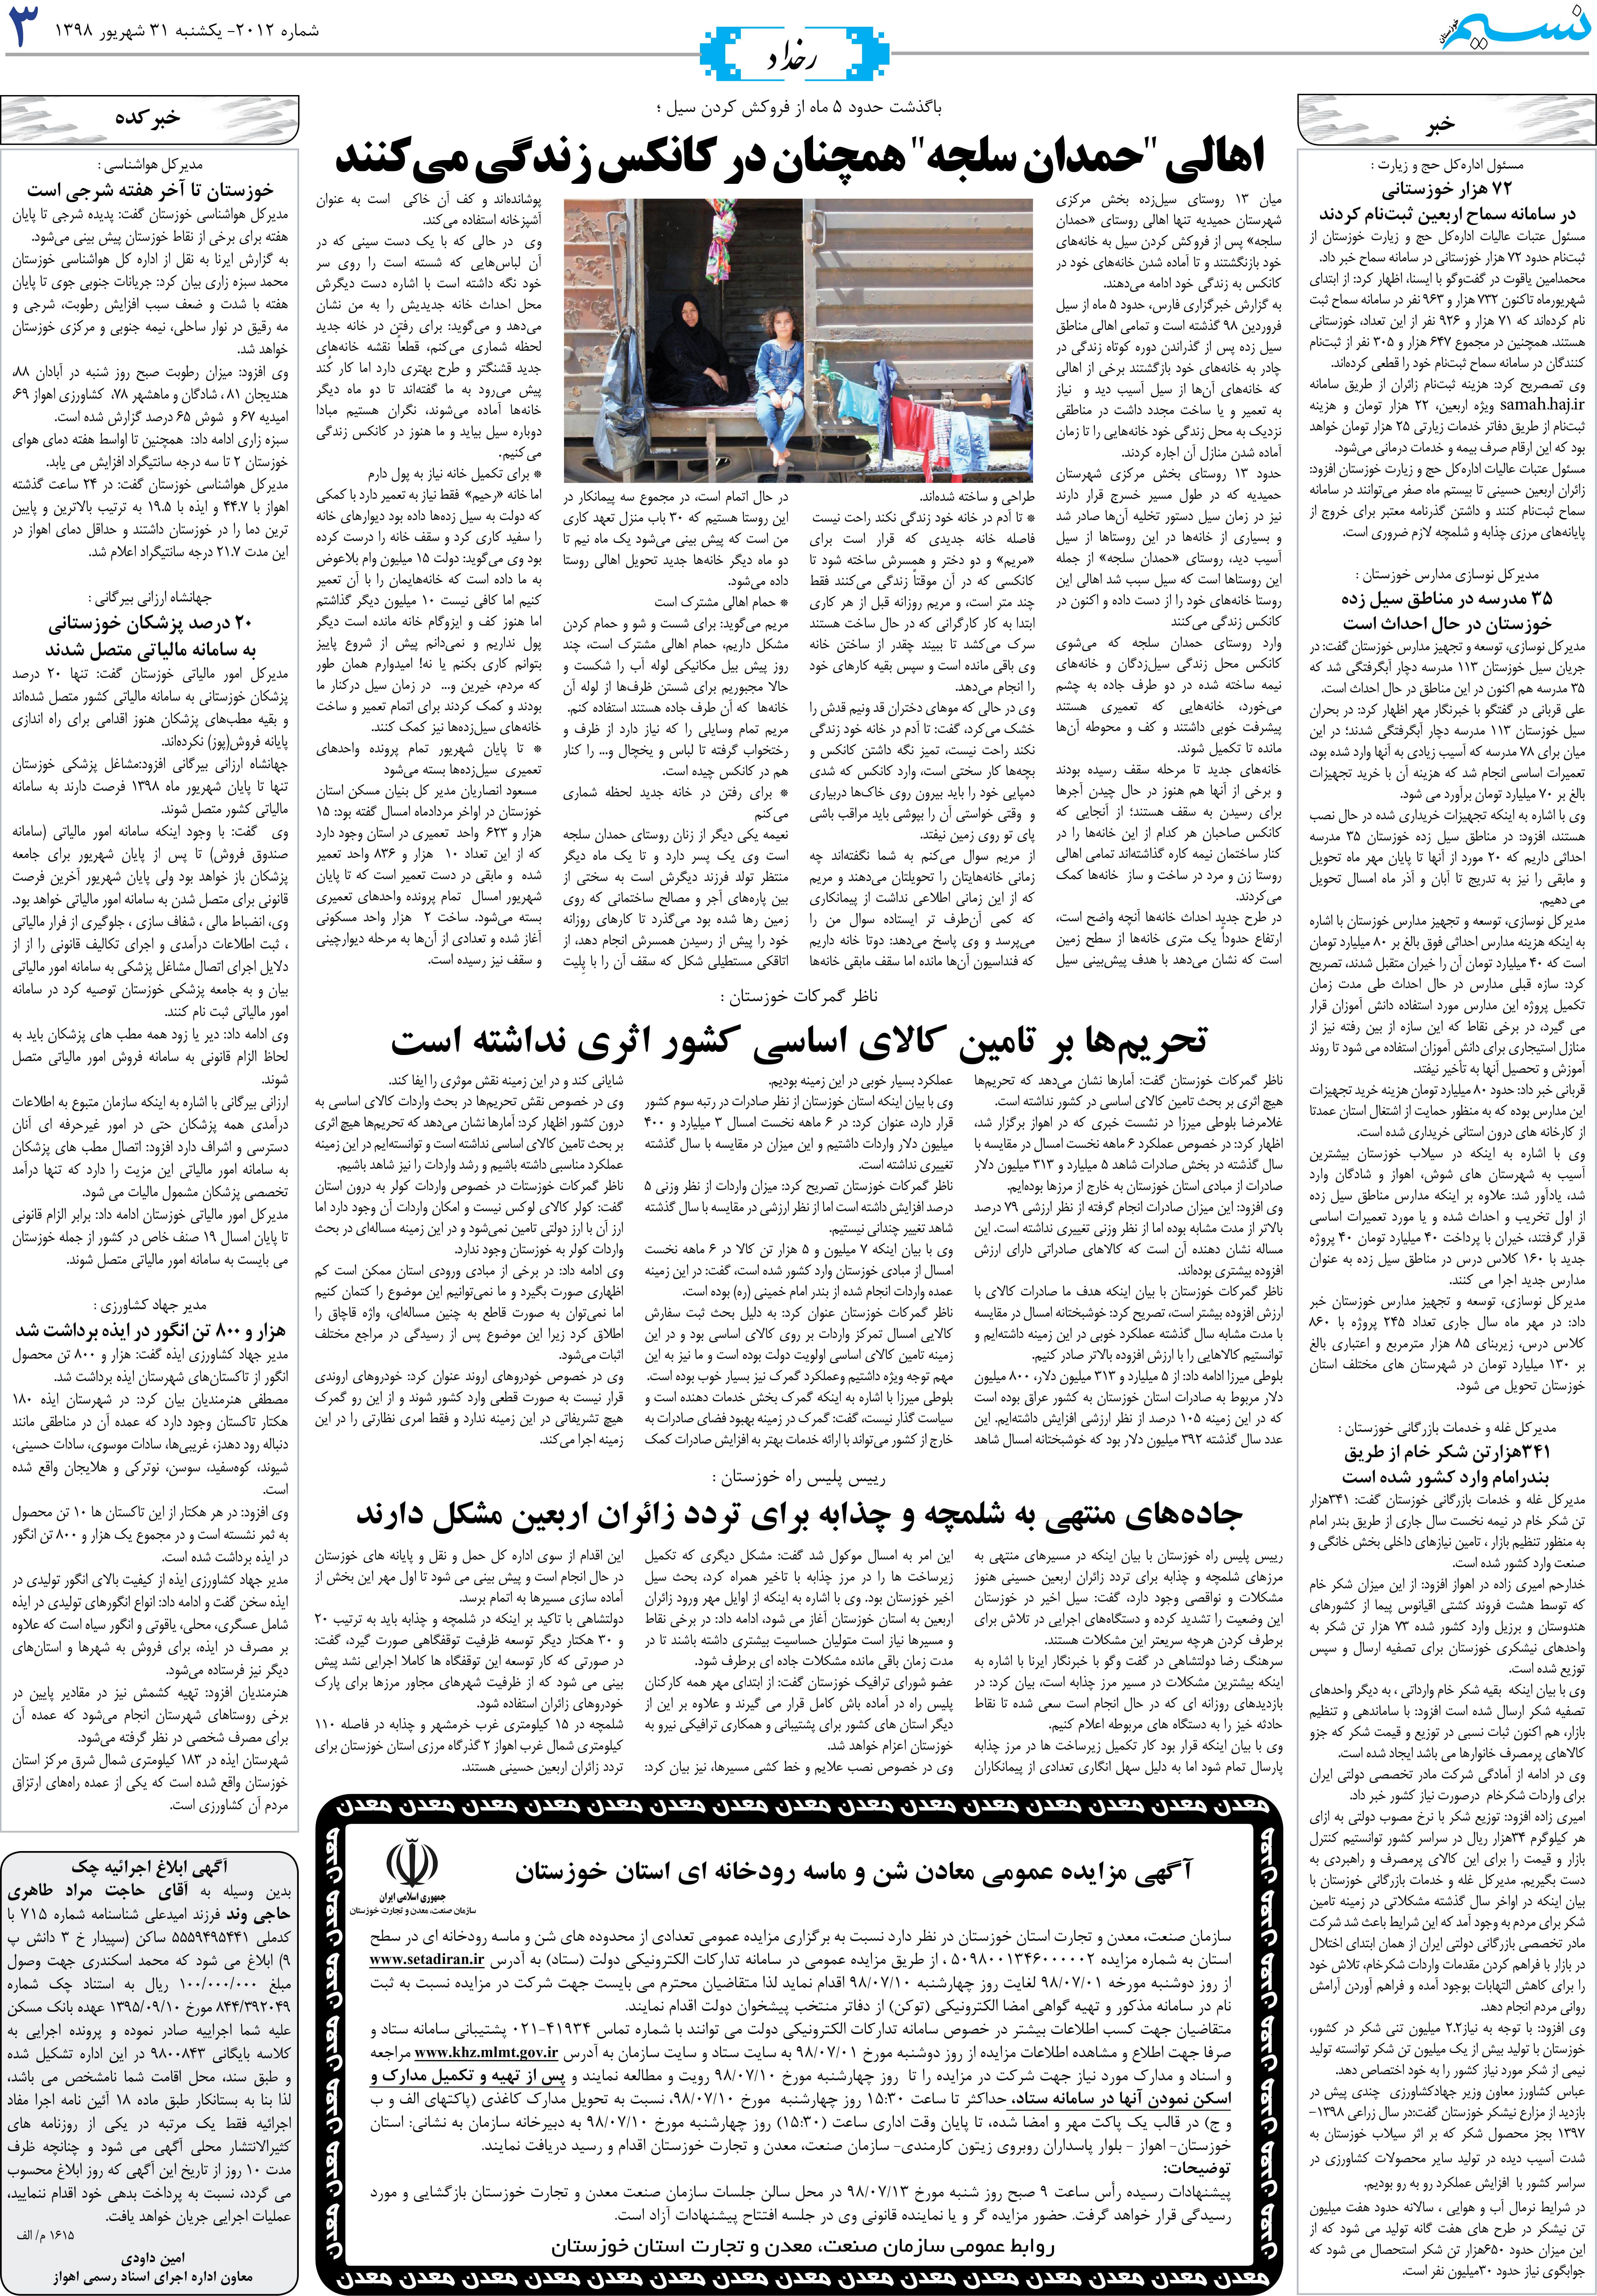 صفحه رخداد روزنامه نسیم شماره 2012